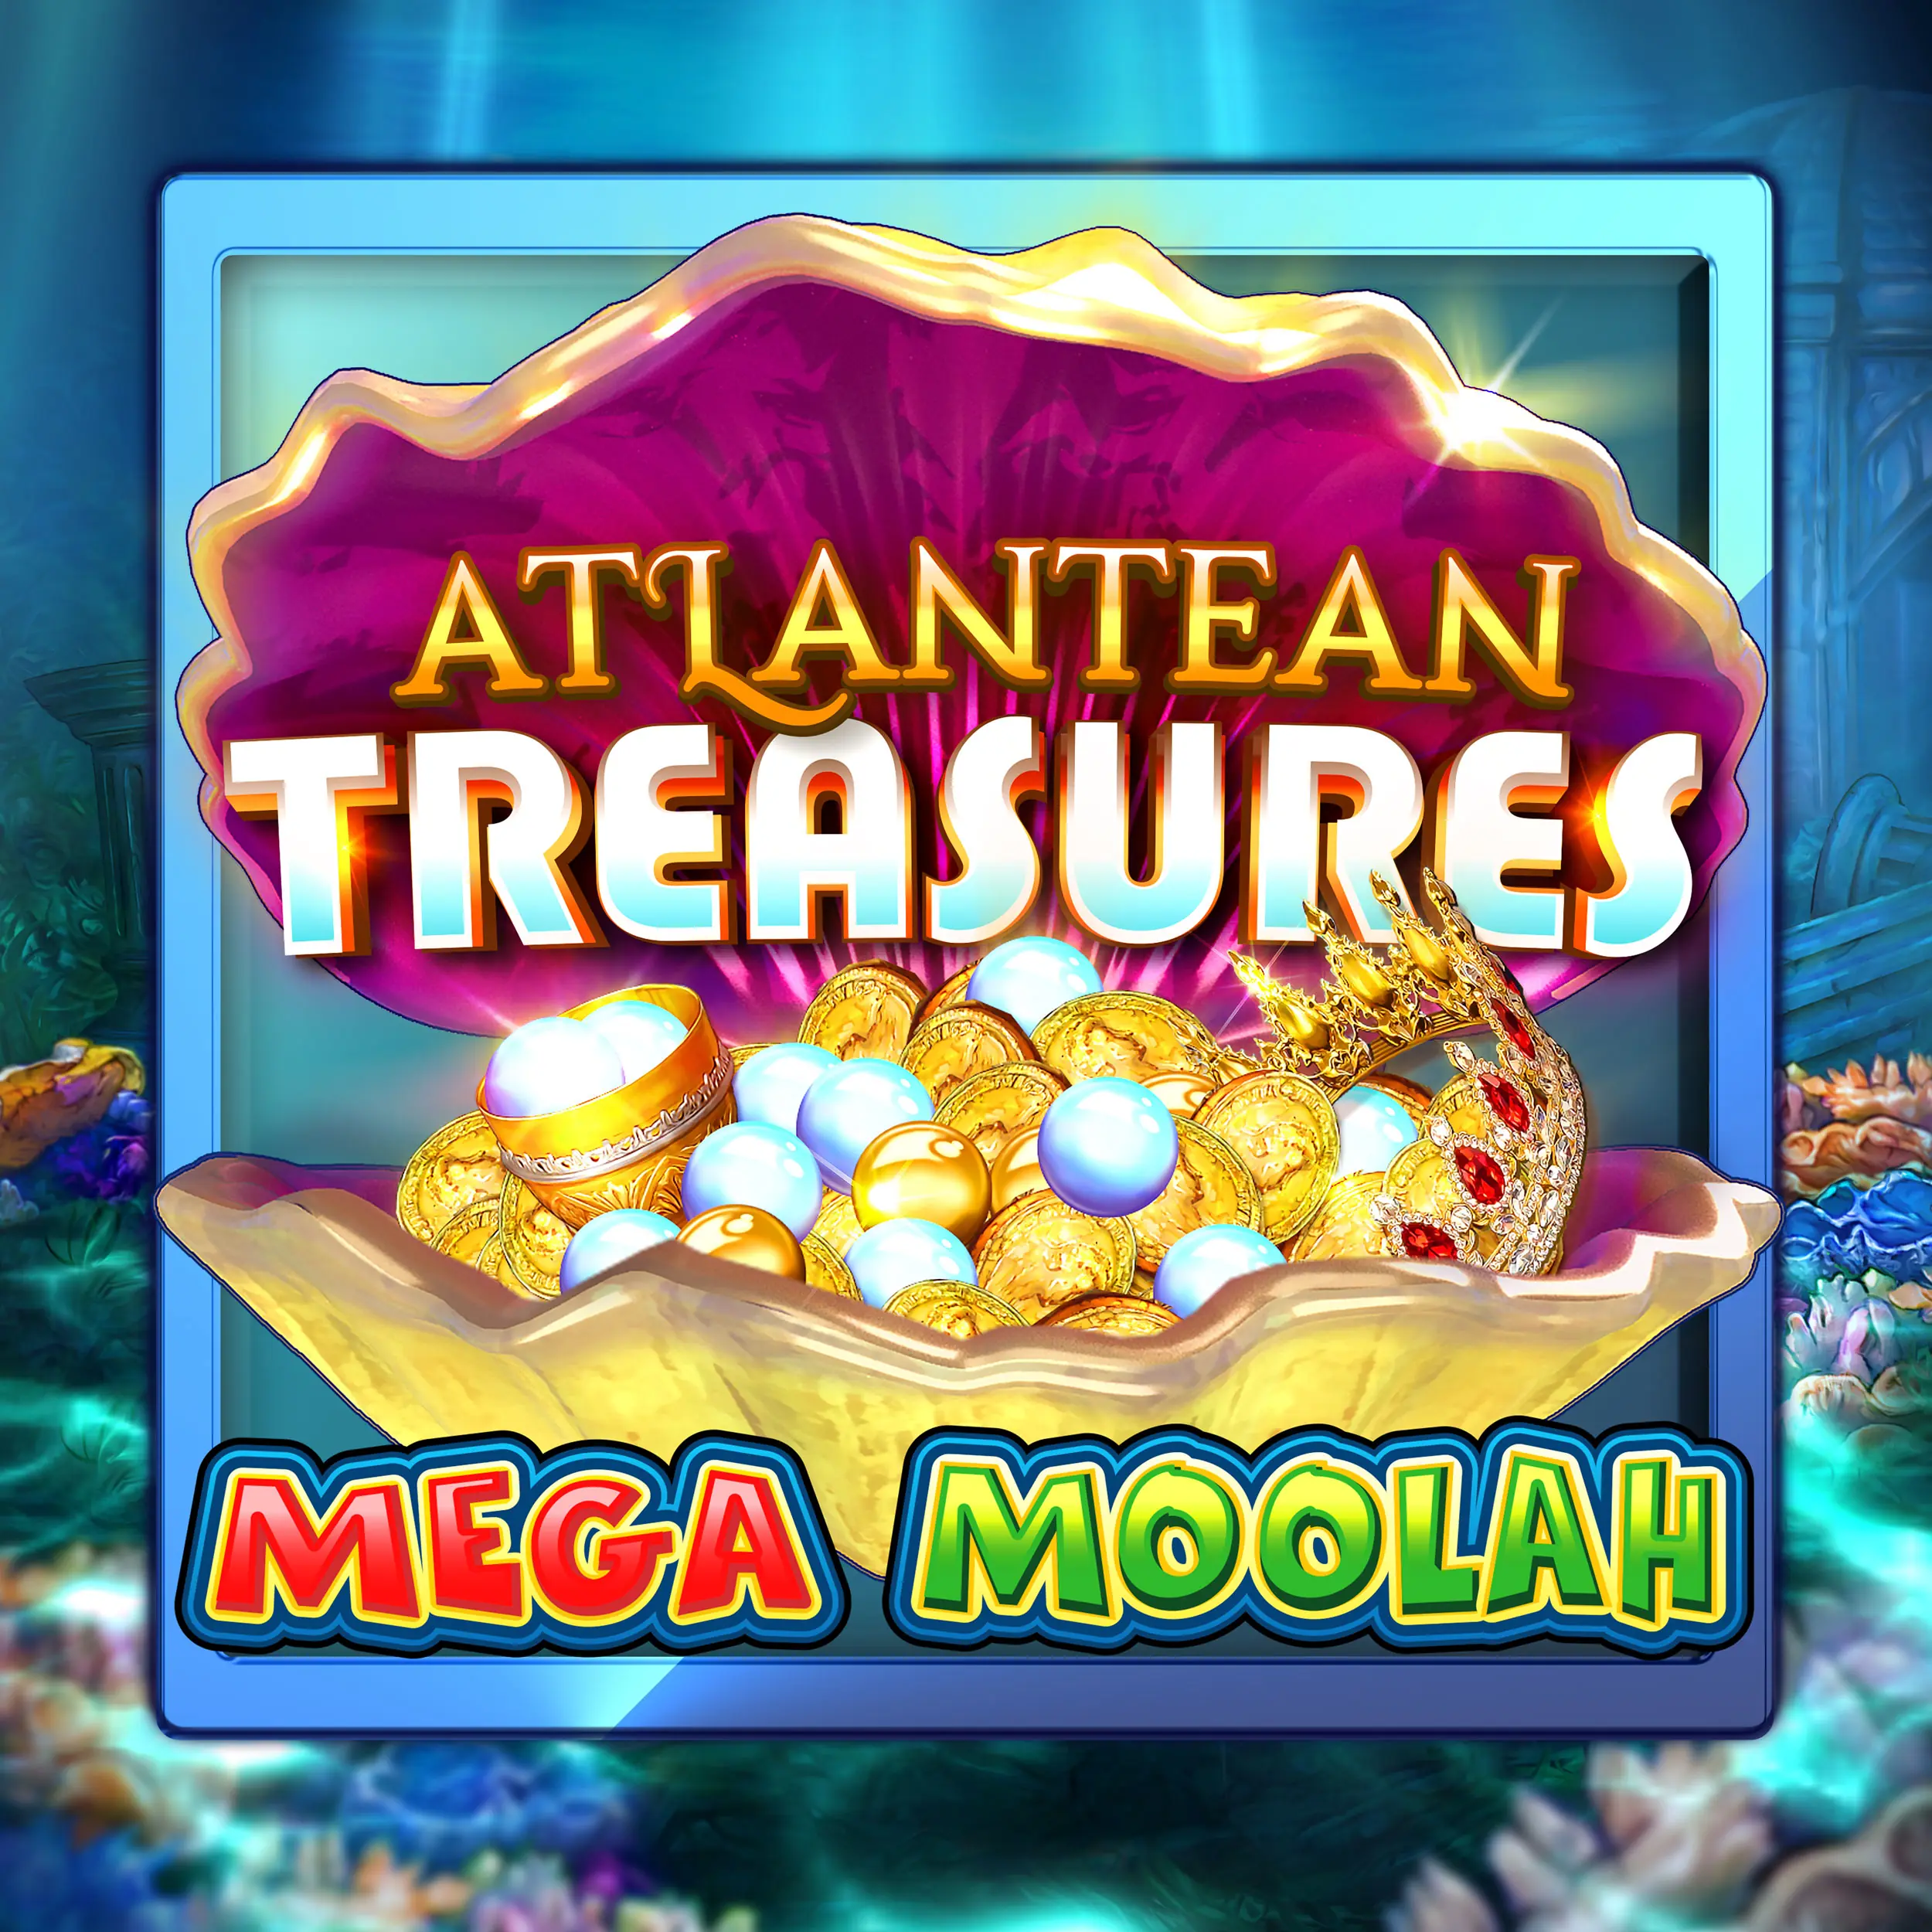 Atlantean Treasures Mega Moolah